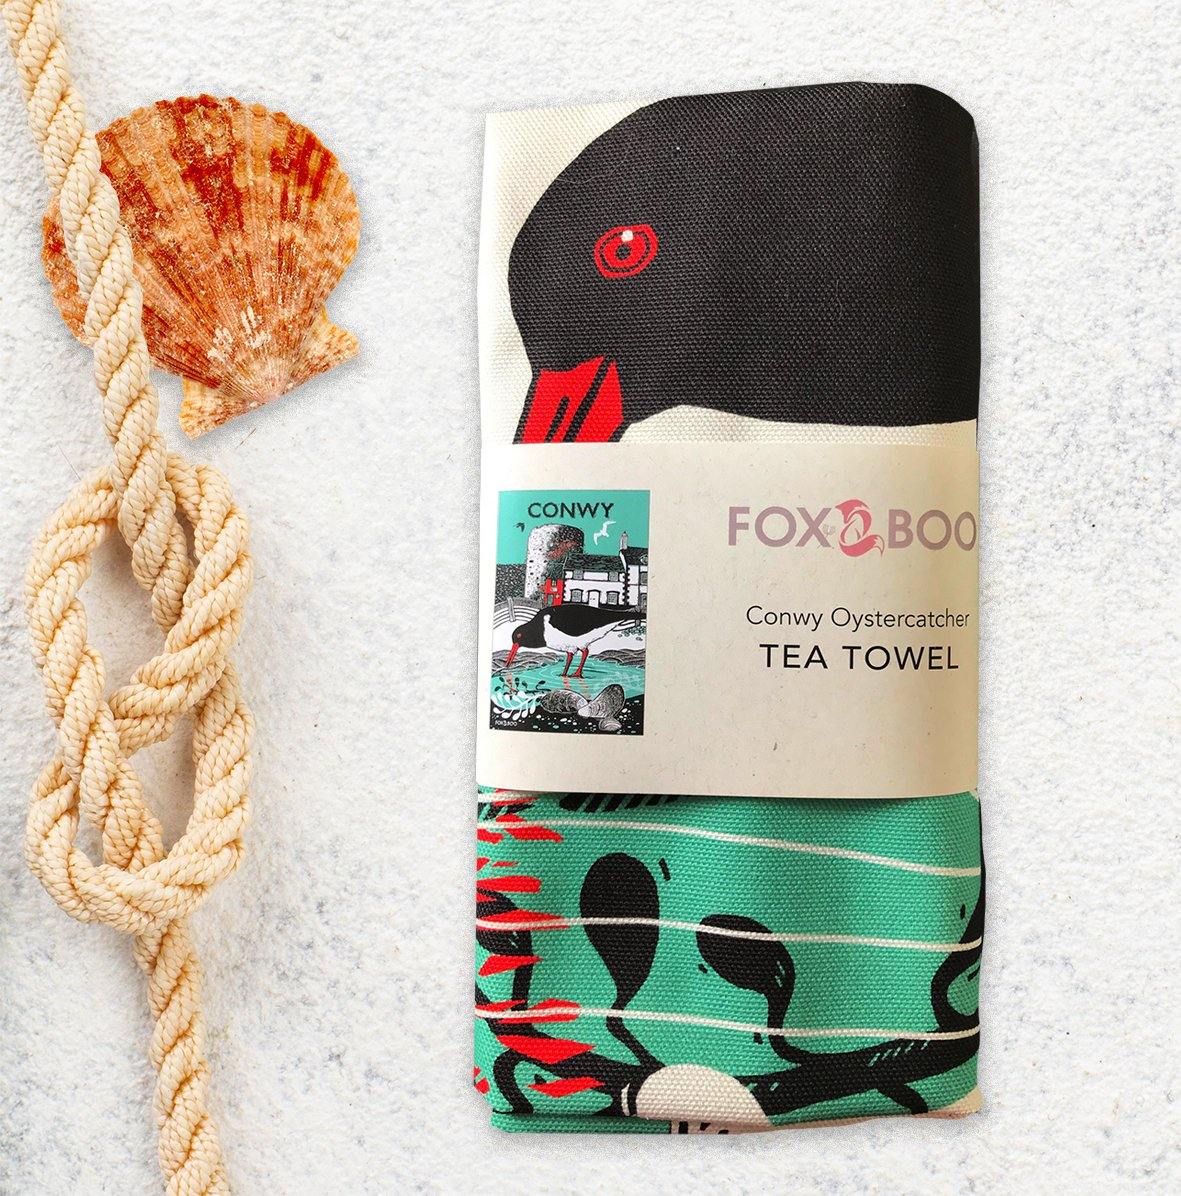 Conwy Oystercatcher Tea Towel - Fox & Boo